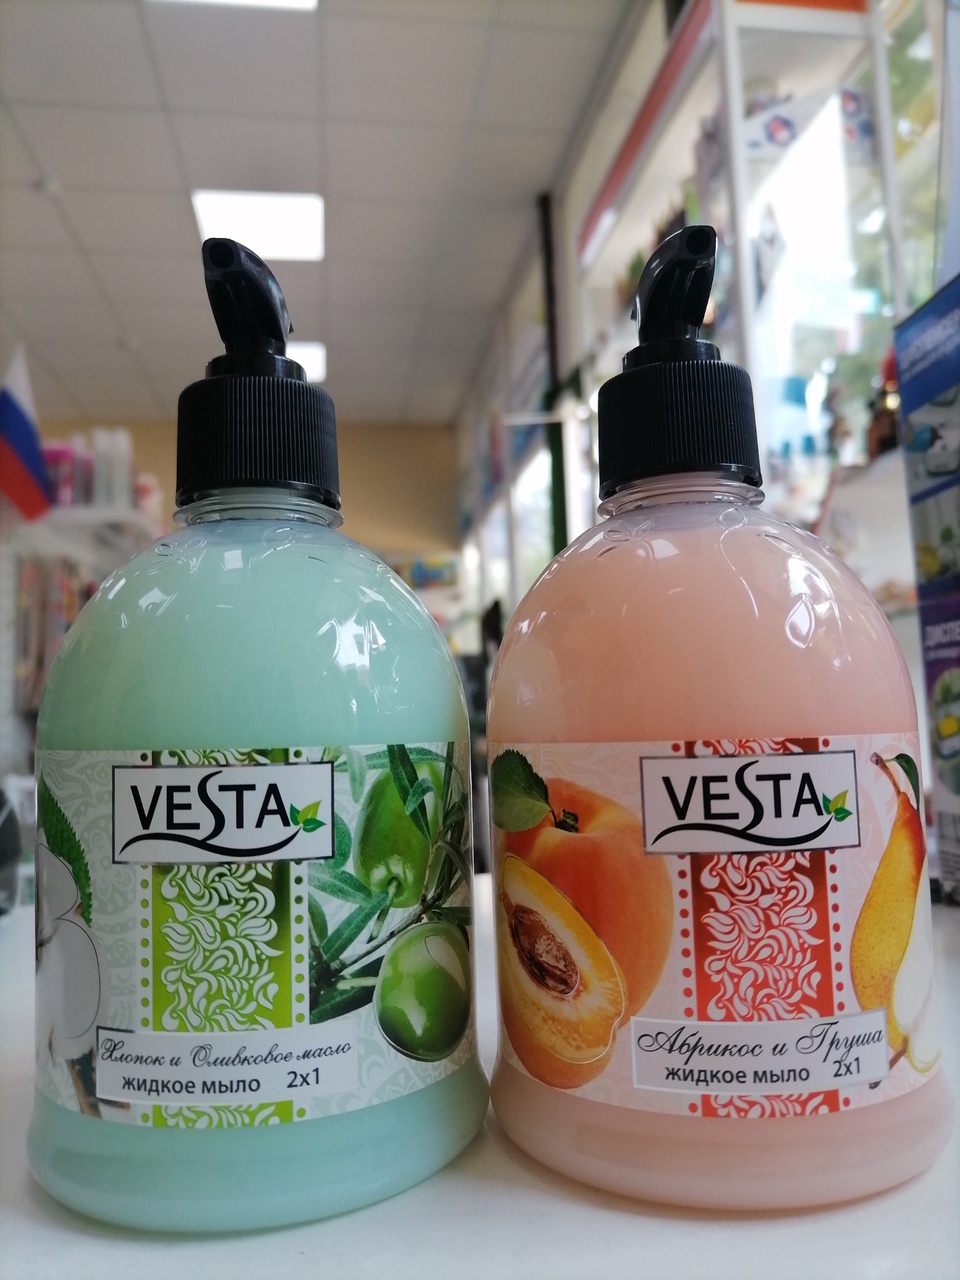 Vesta жидкое мыло 2в1 500мл. - 99 ₽, заказать онлайн.